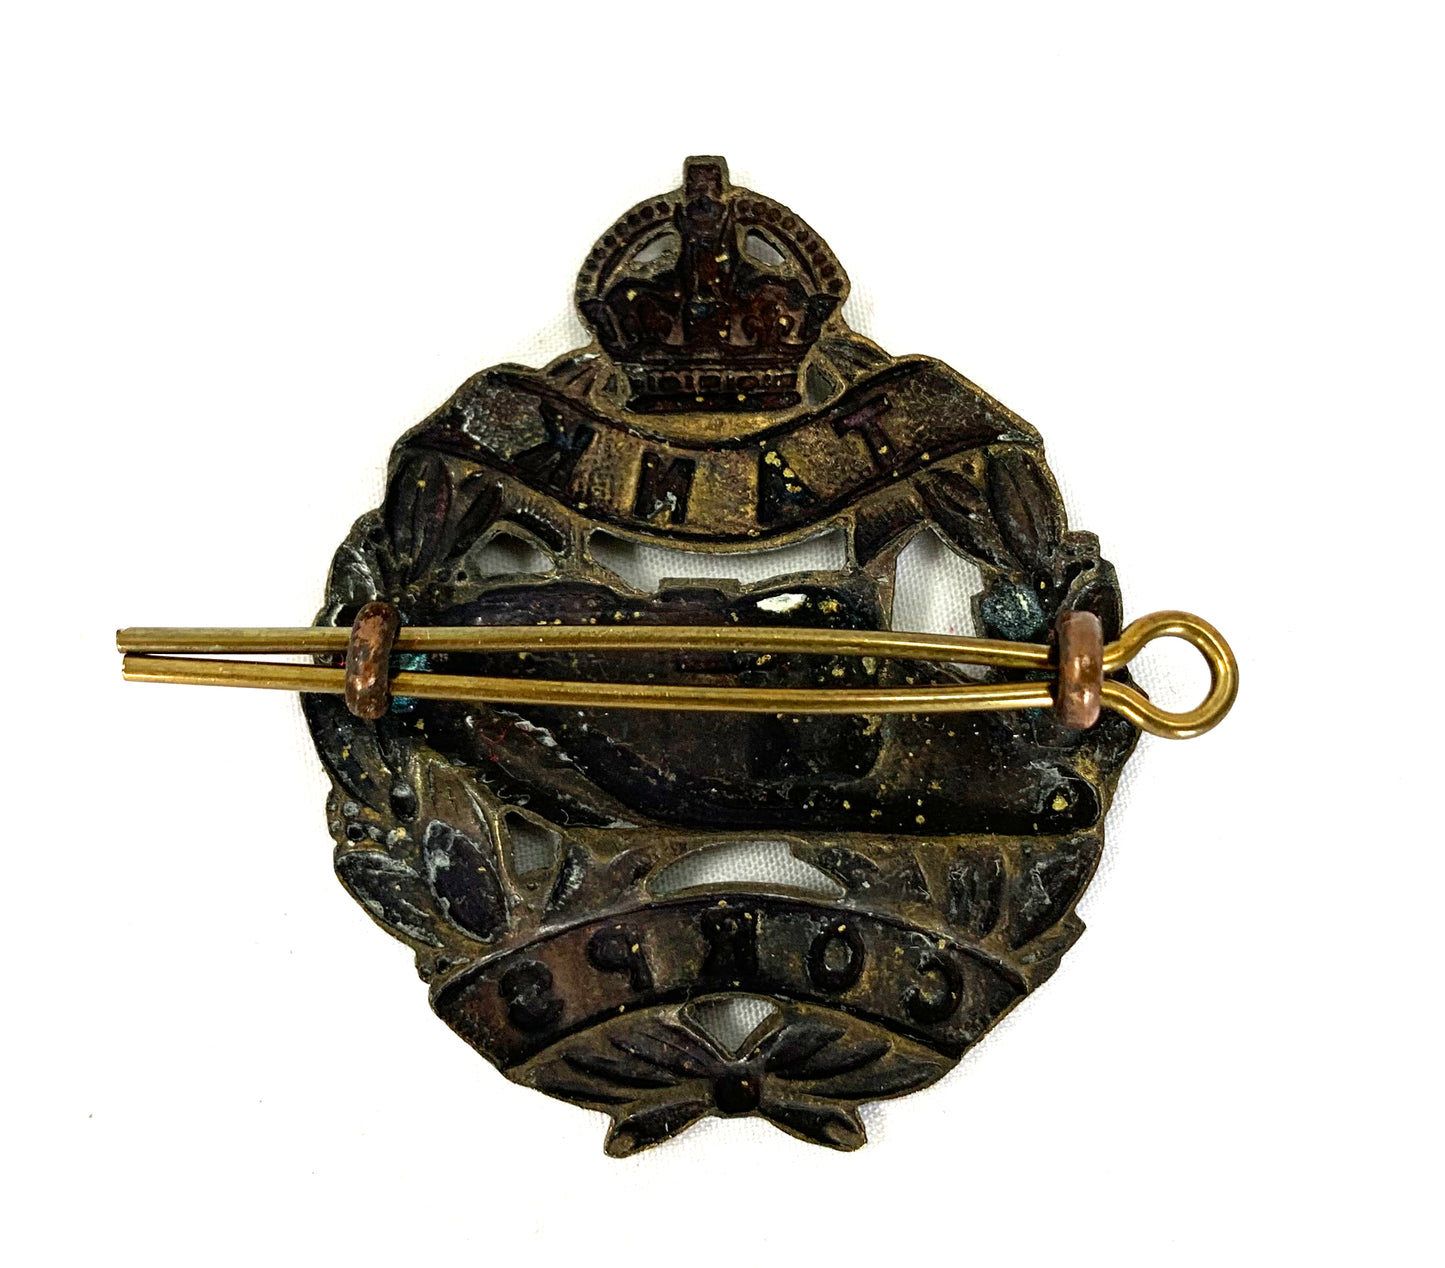 Tank Corp Original Brass Cap Badge with pin.